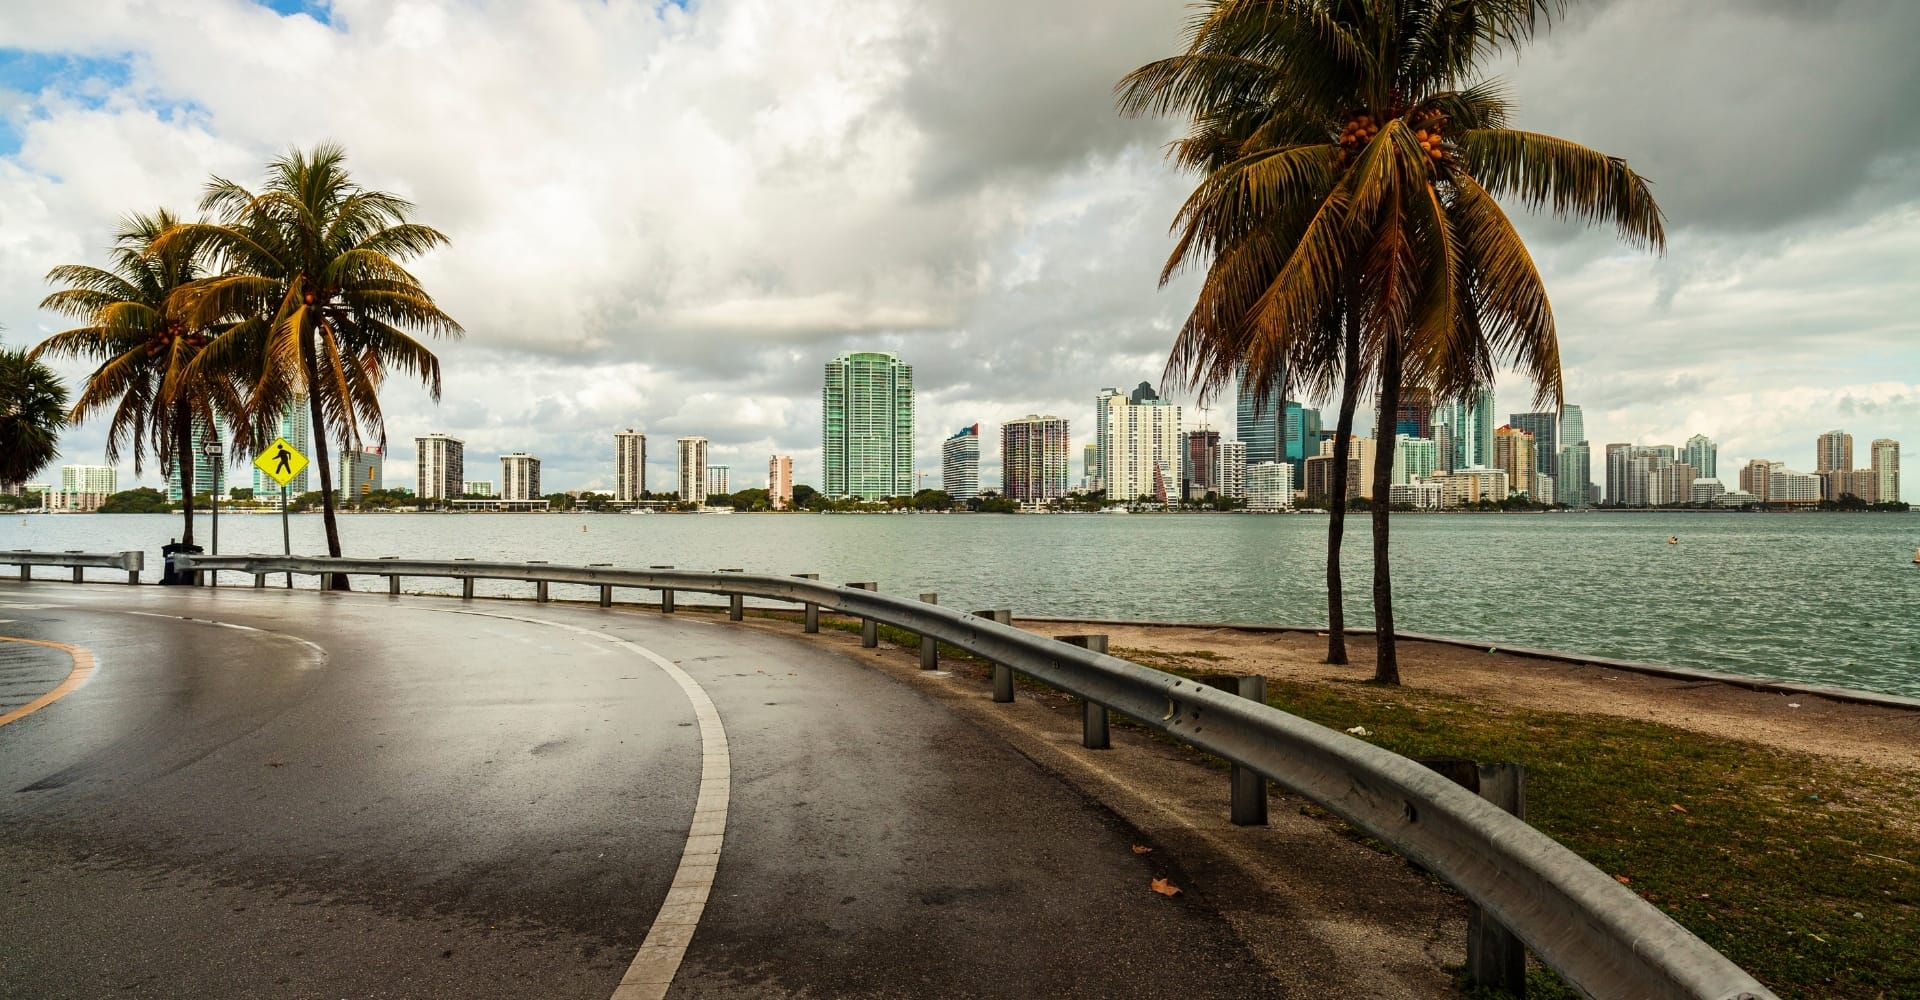 Alconero and Associates - How to prepare for hurricane in Miami